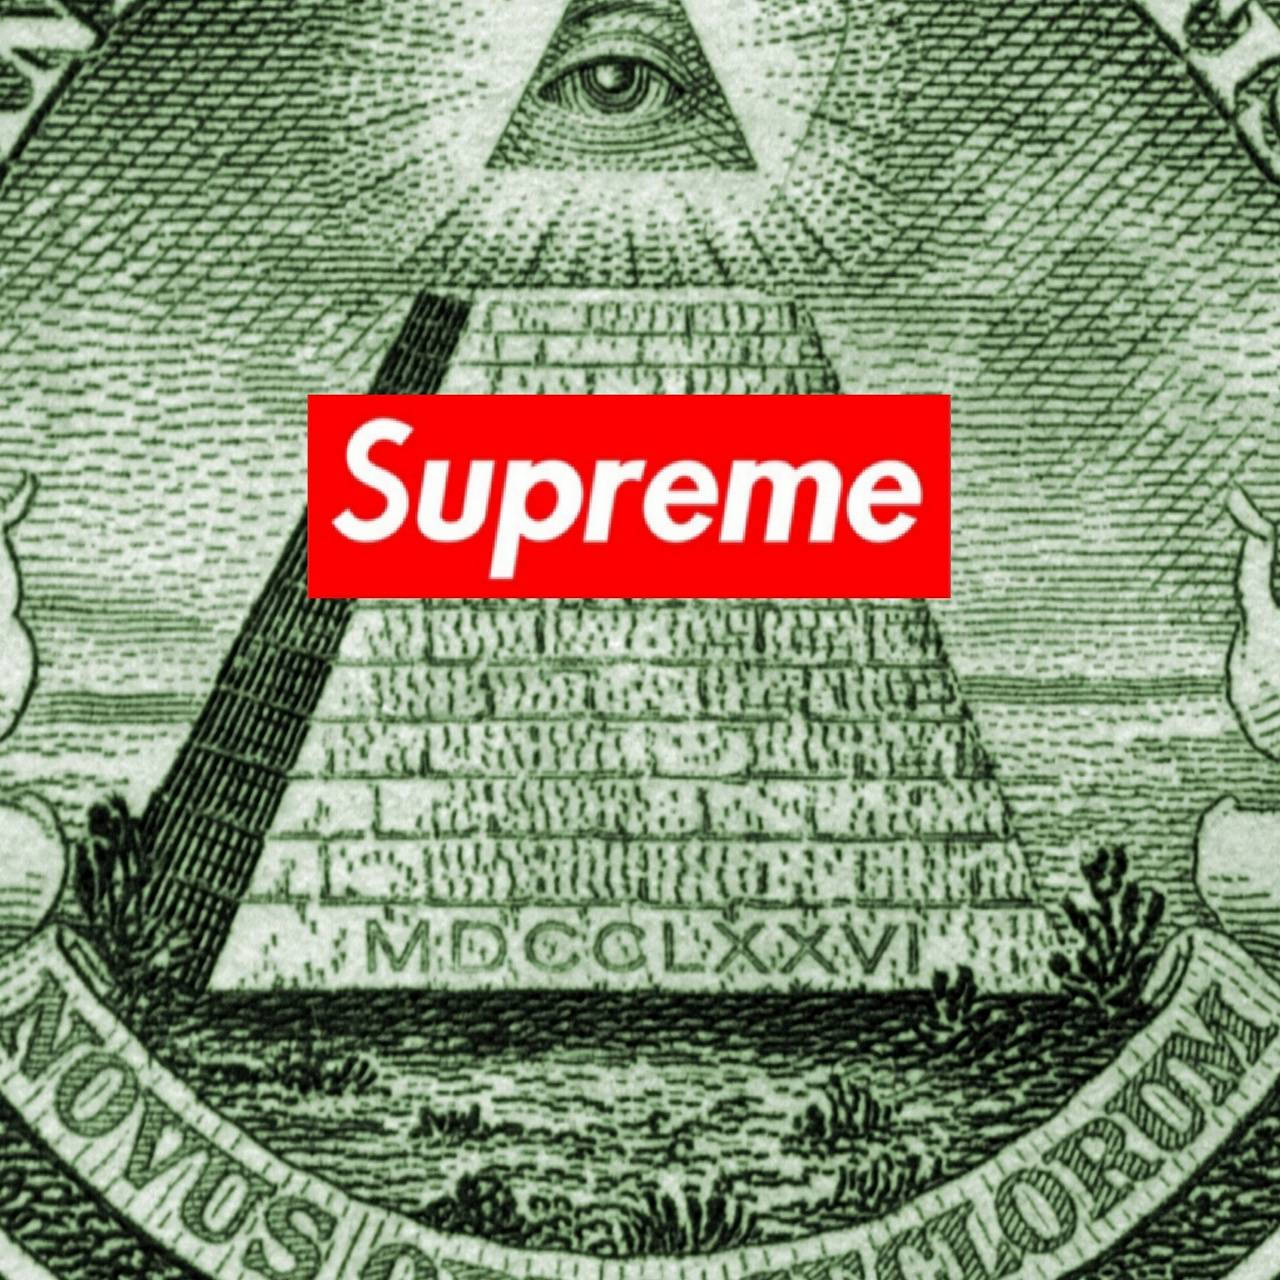 1280x1280 Supreme Illuminati Wallpaper Wallpaper